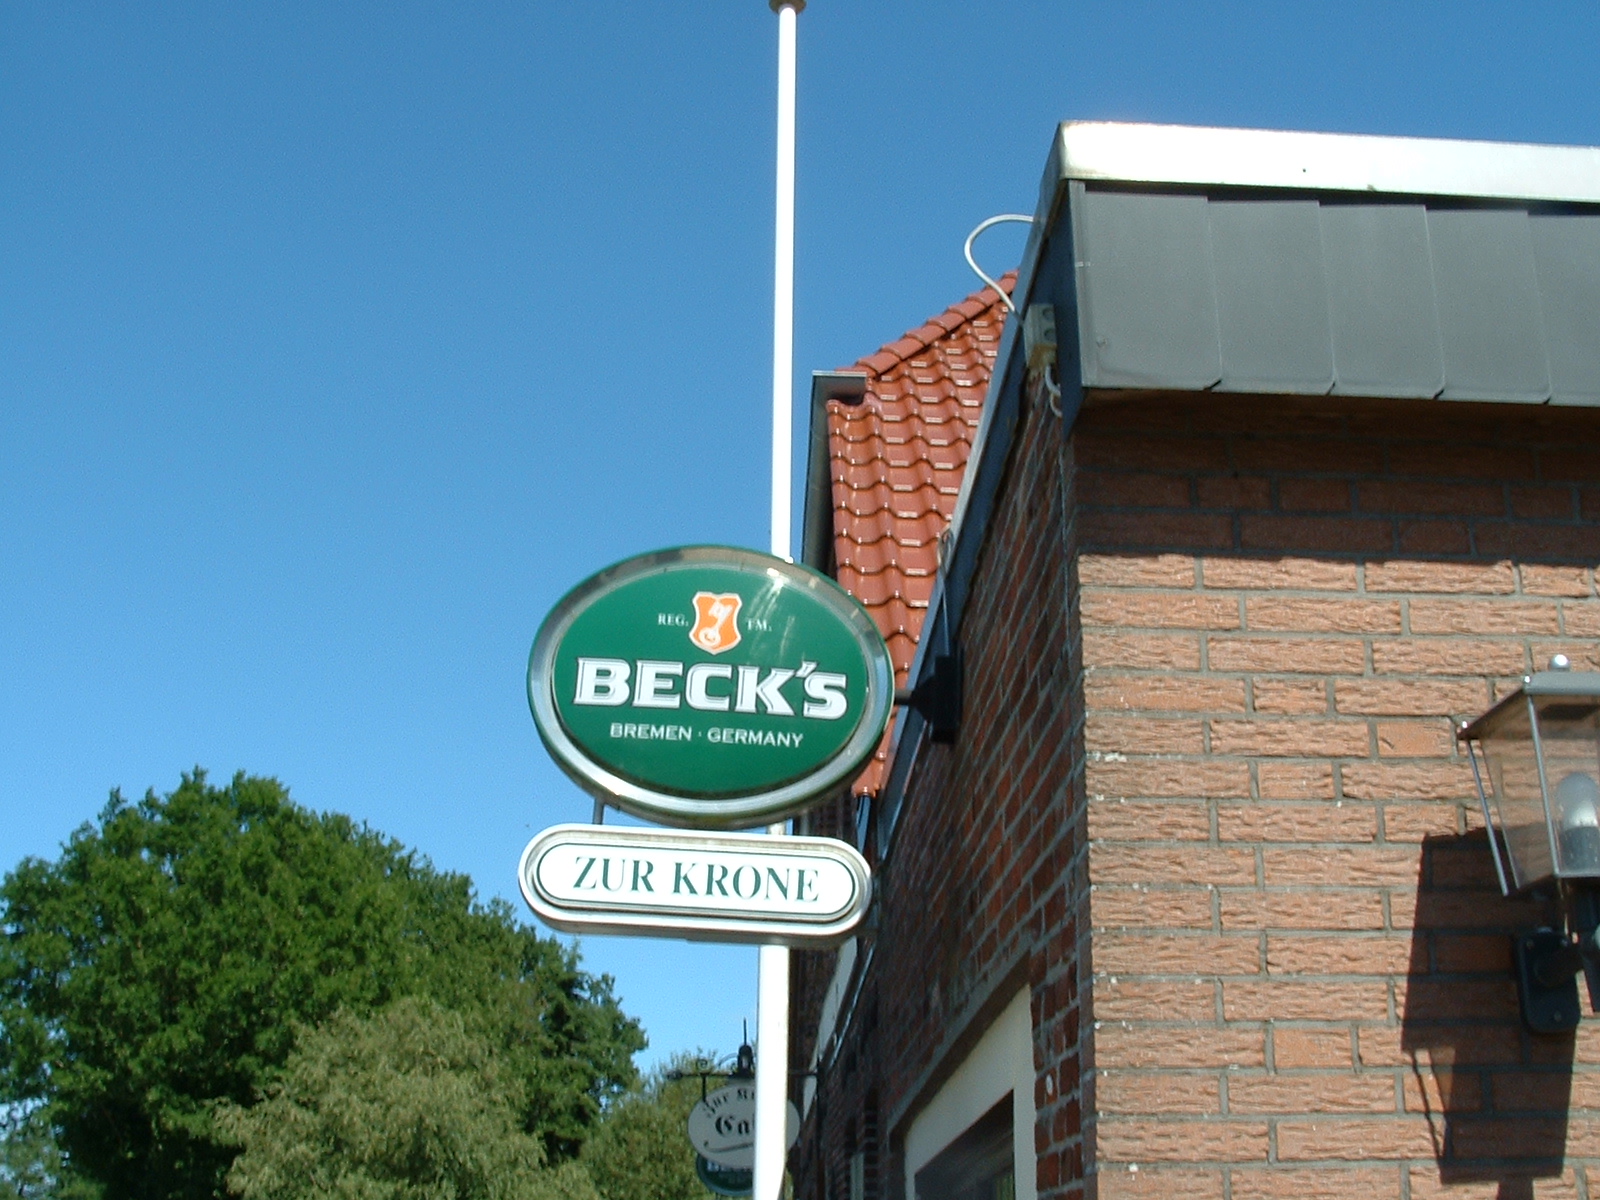 Gaststätte zur Krone in Oberhausen/Hude Im Ausschank gibt es Beck s Bier